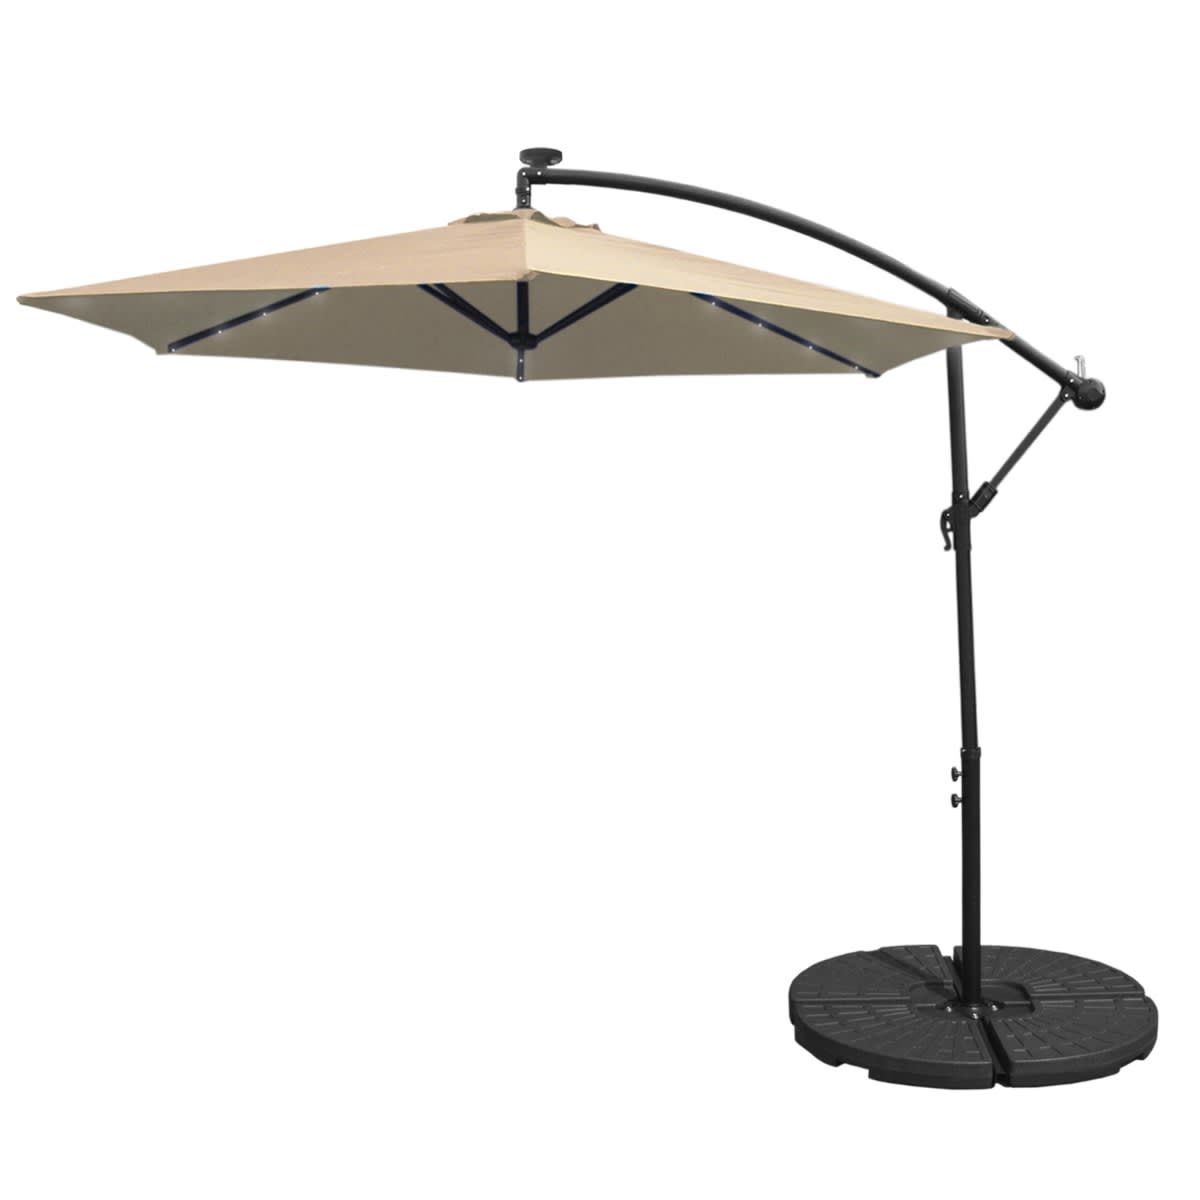 Beige aurinkovarjo 3m pyöreällä jalustalla | Karkkainen.com verkkokauppa